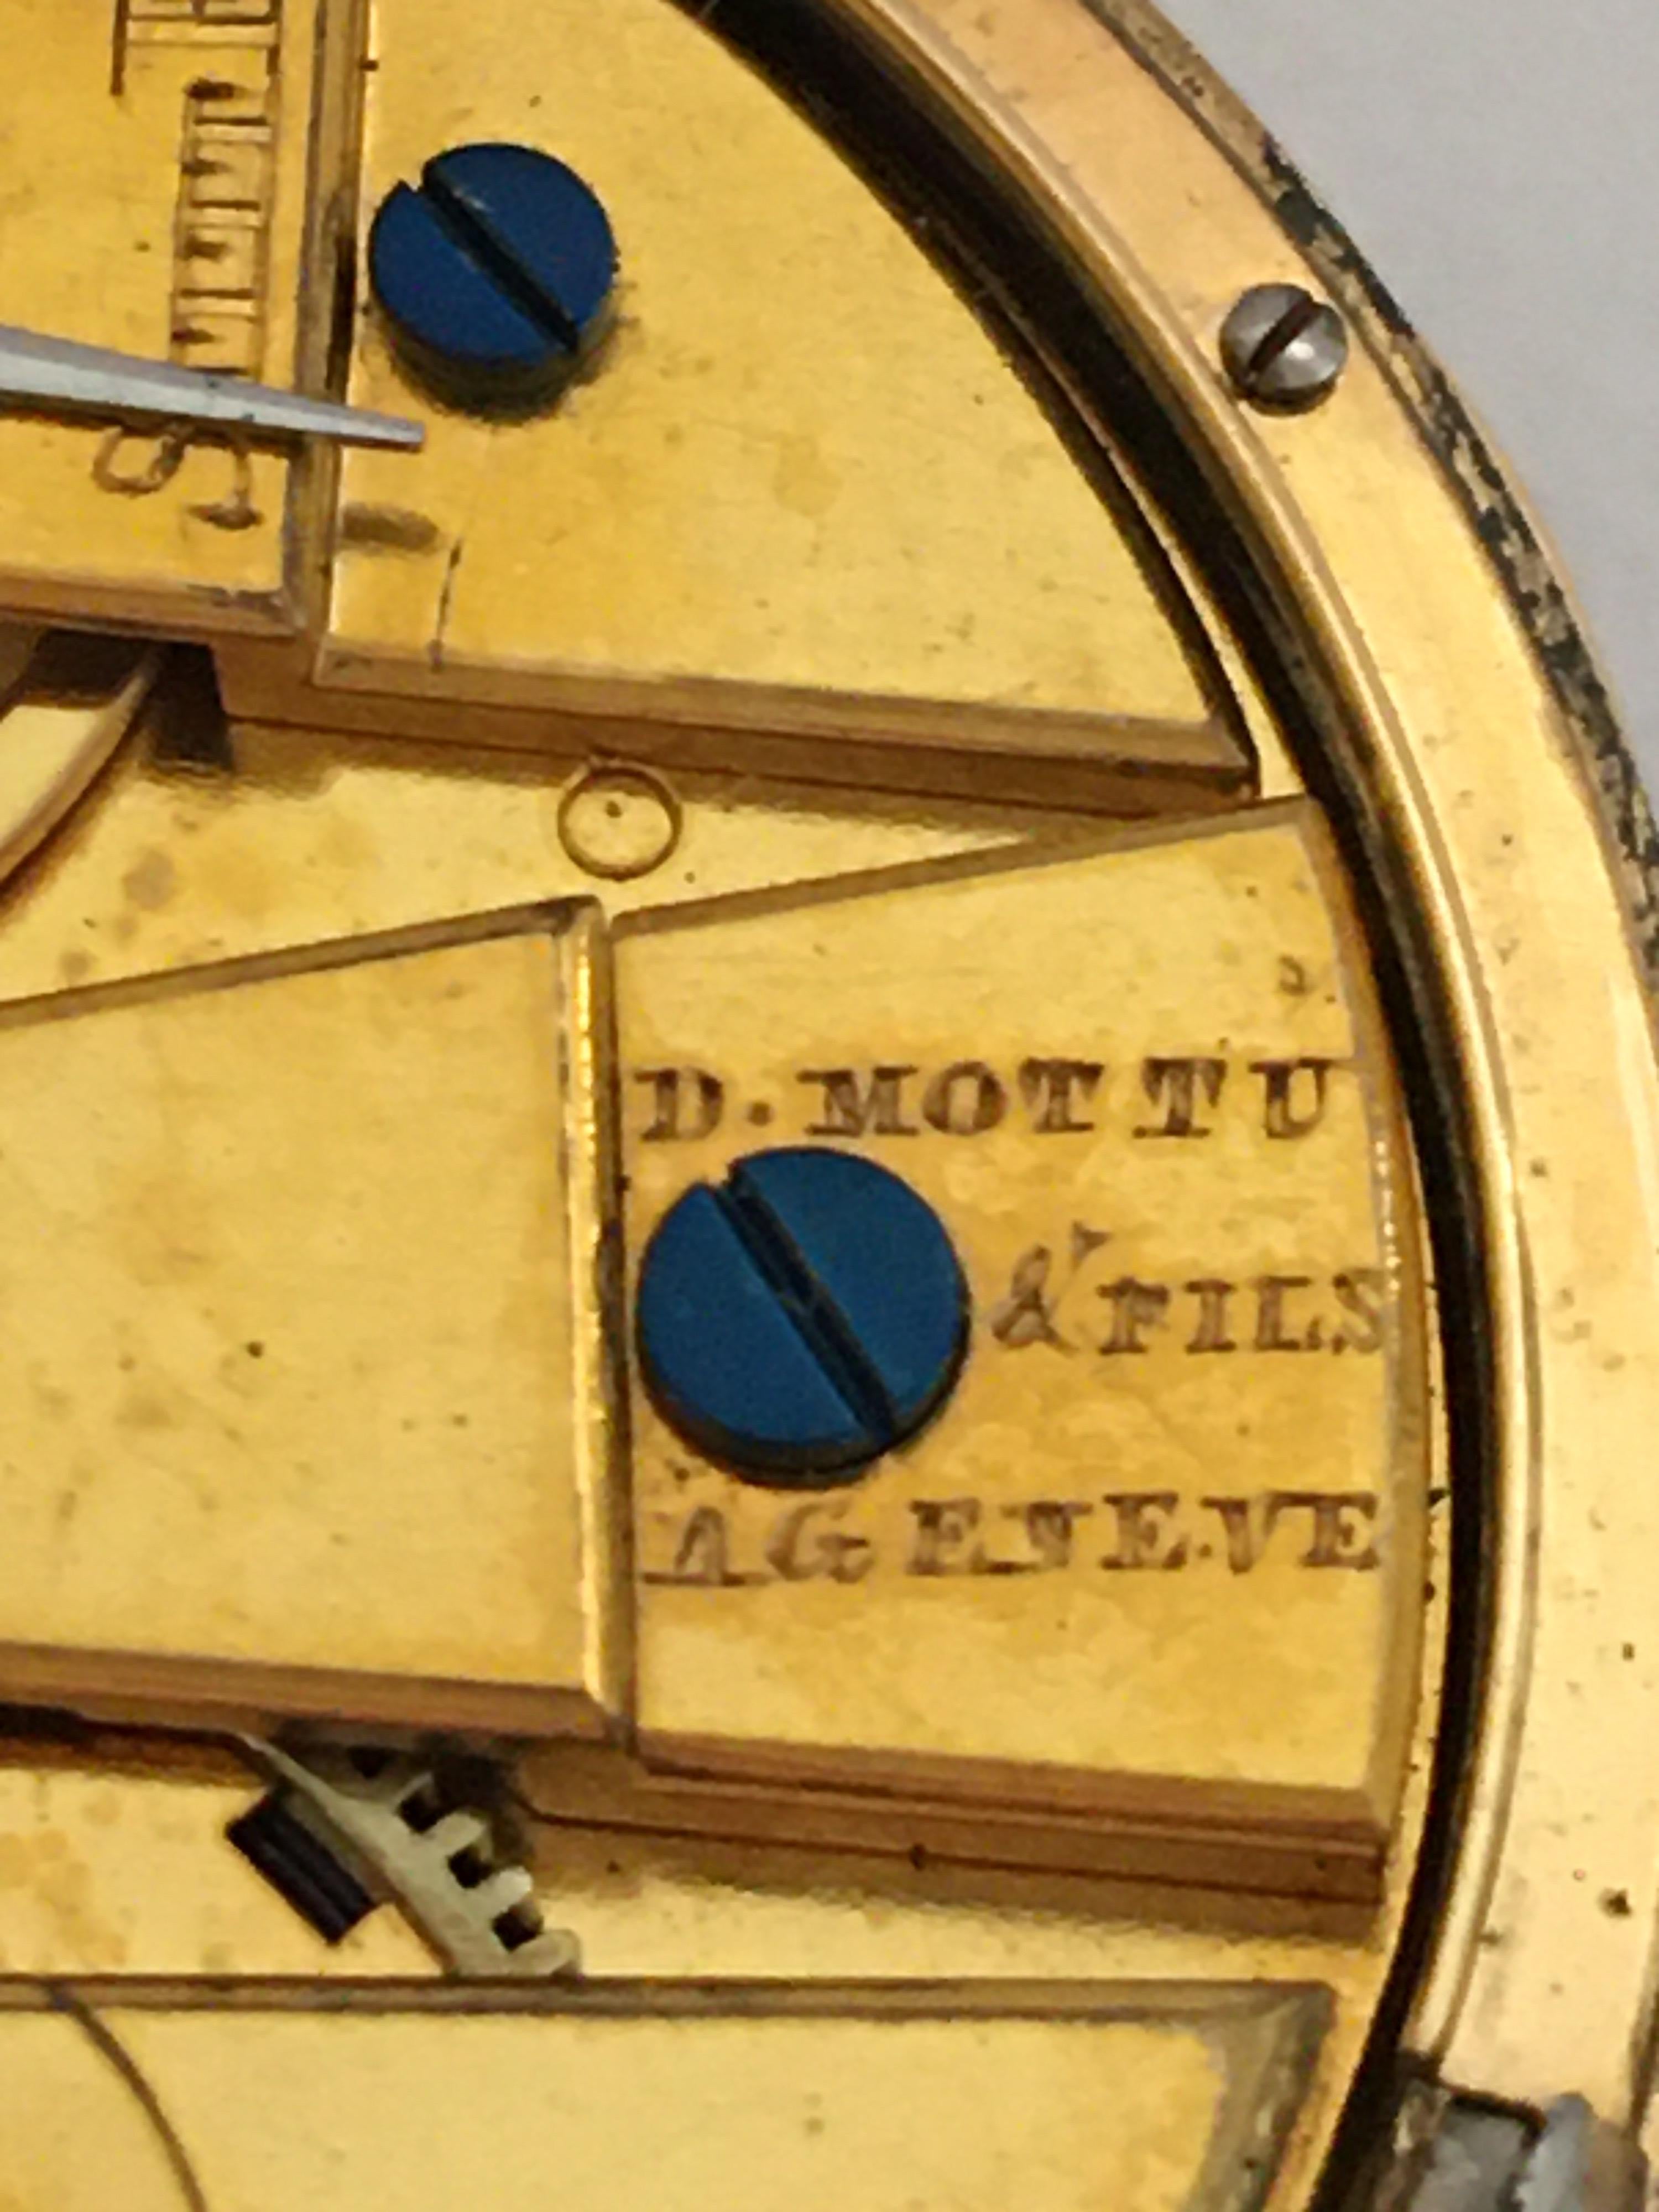 Very Fine Early 18K Gold Key-Wind D. Mottu & Fils A Geneve Small Pocket Watch 1